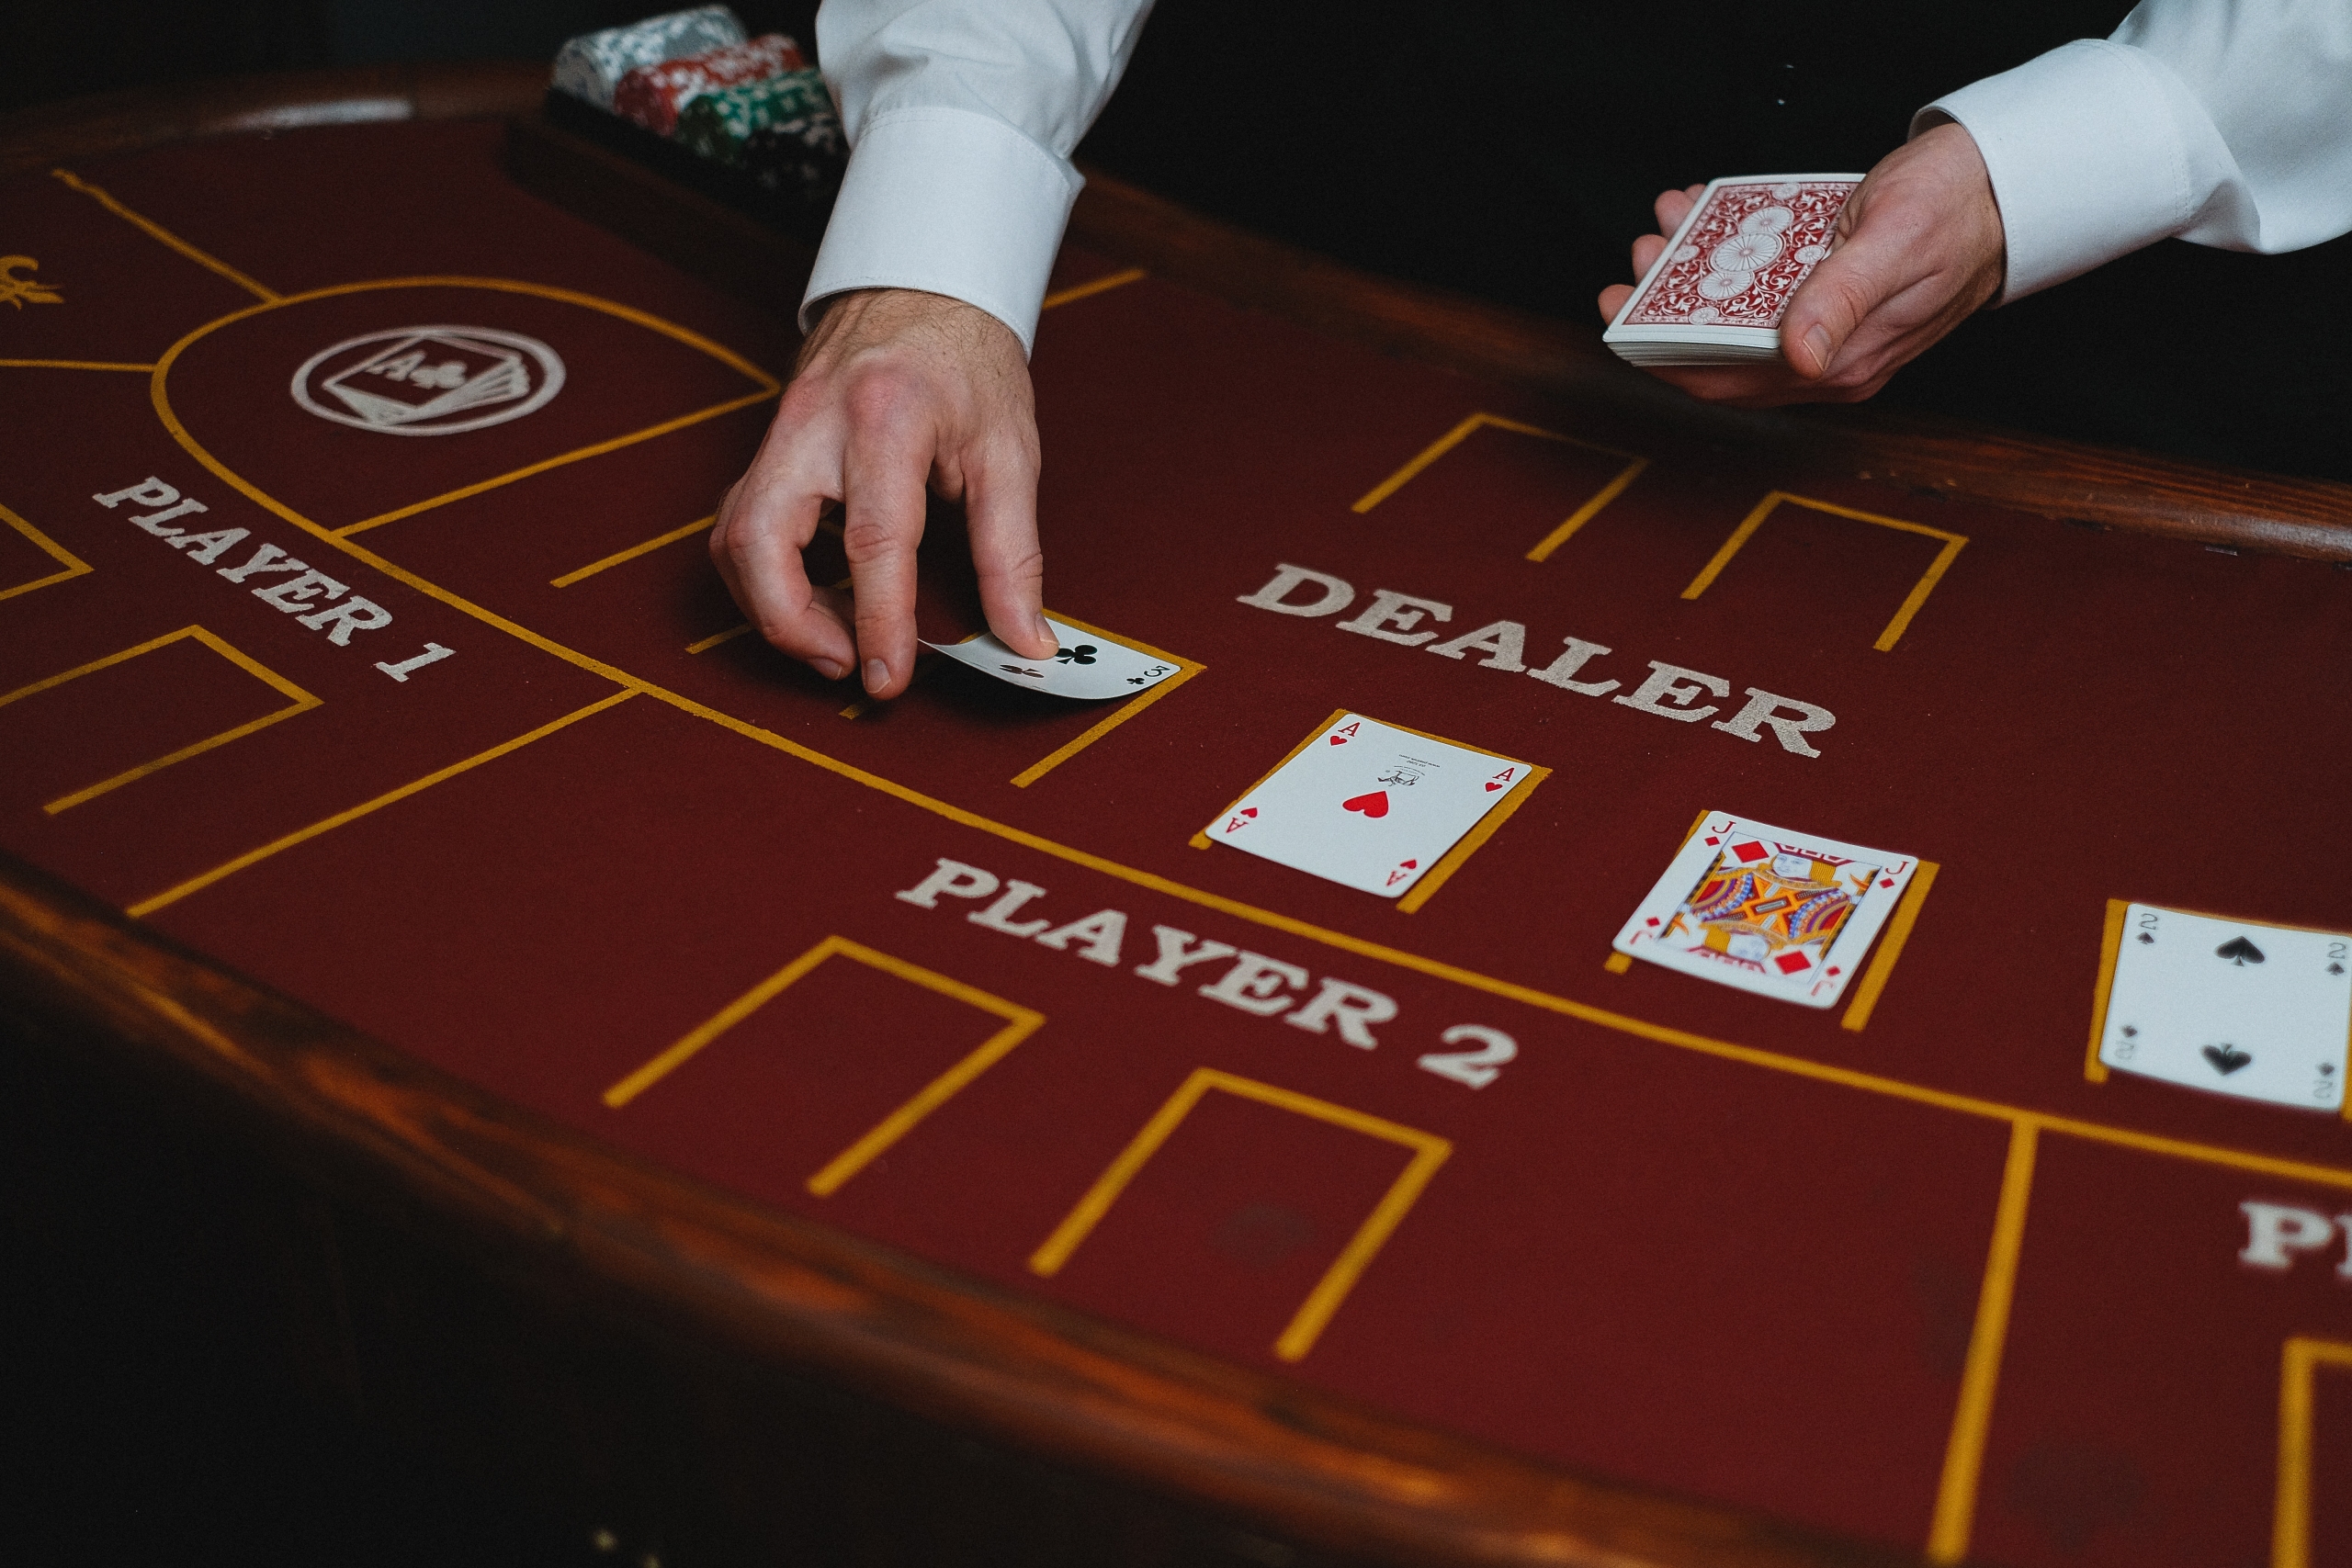 A blackjack table